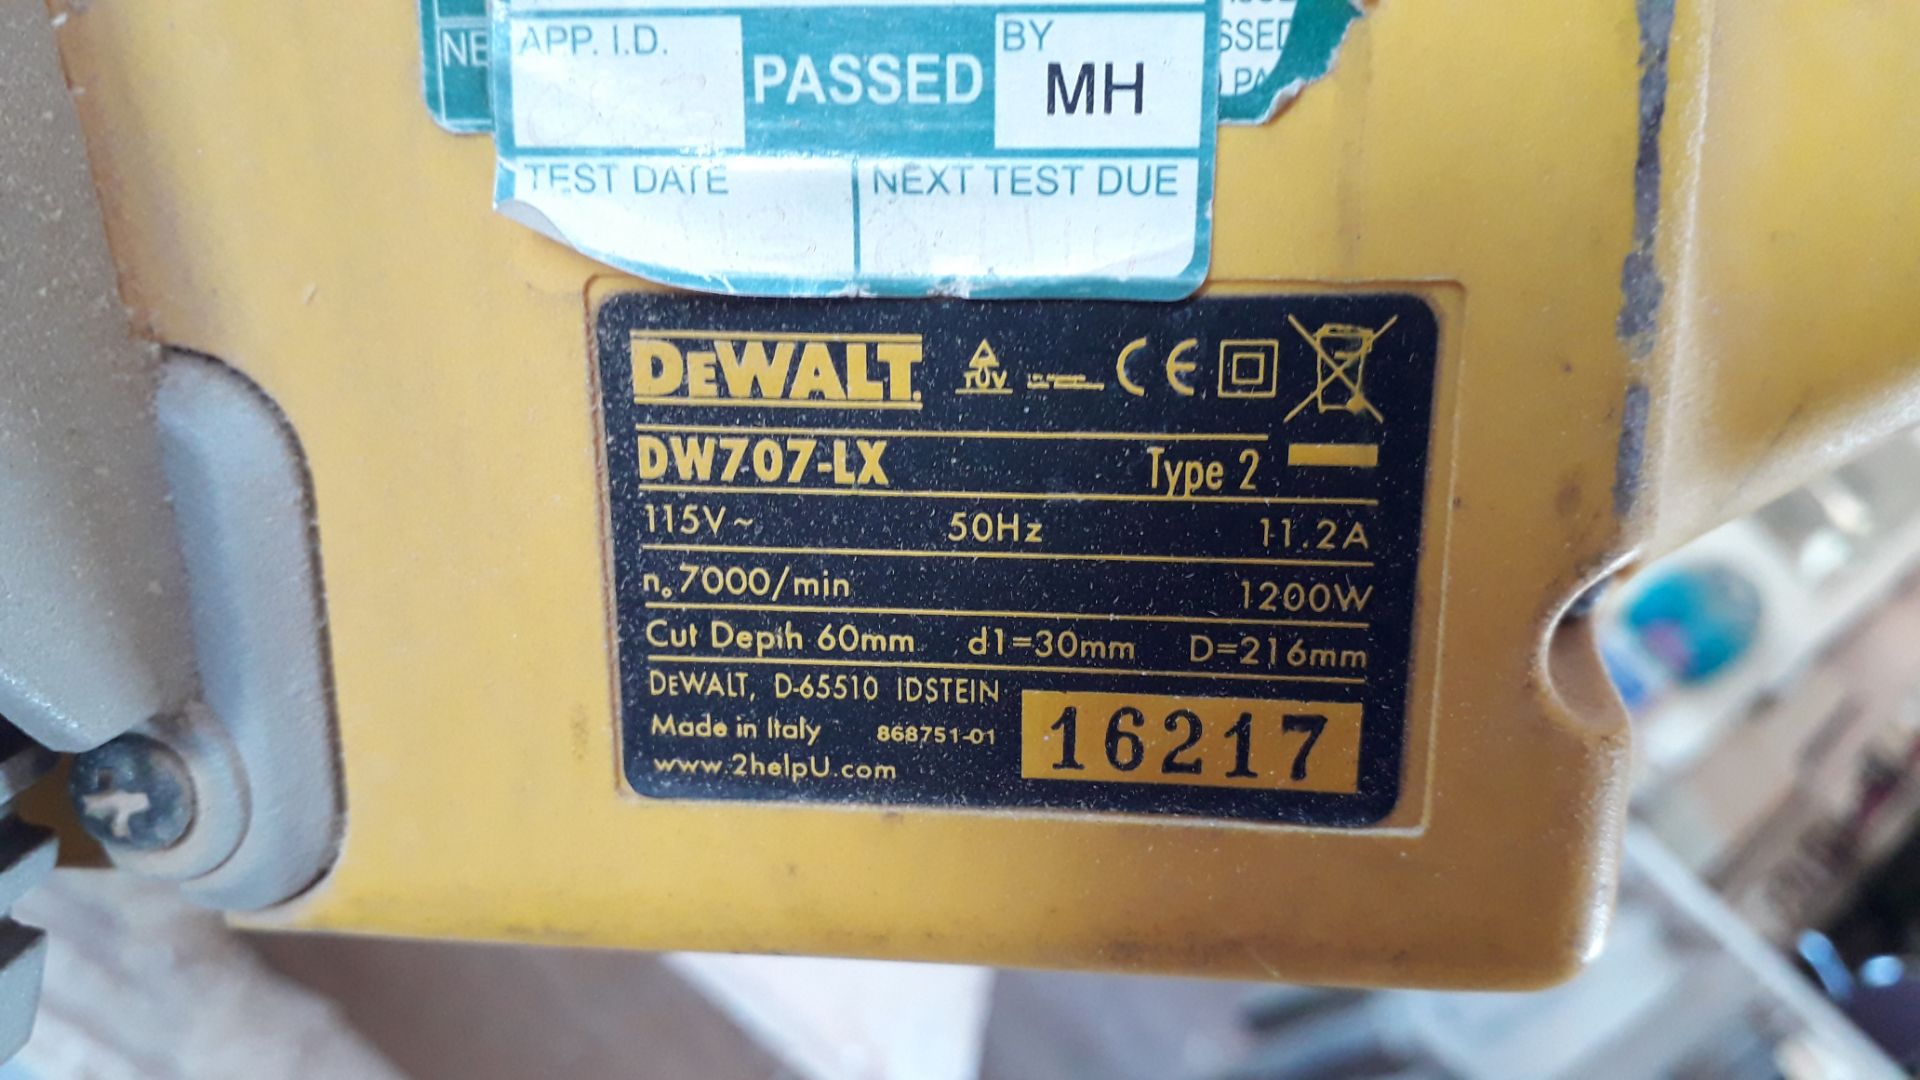 Dewalt DW707LX Mitre Saw 110v Serial Number 16217 - Image 3 of 3